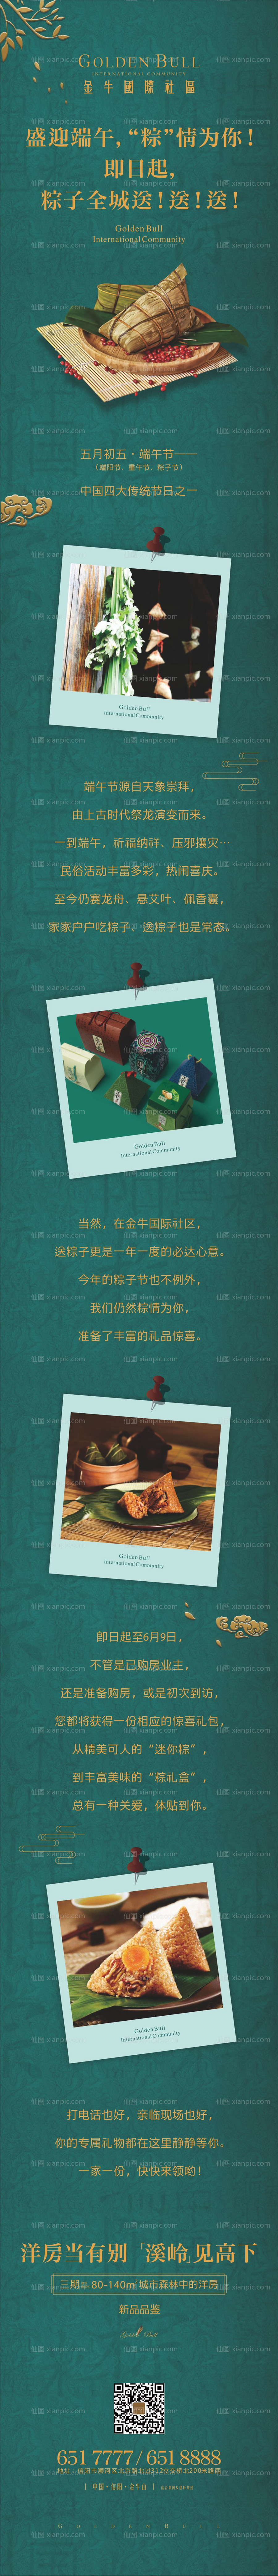 素材乐-地产端午节送粽子活动海报长图